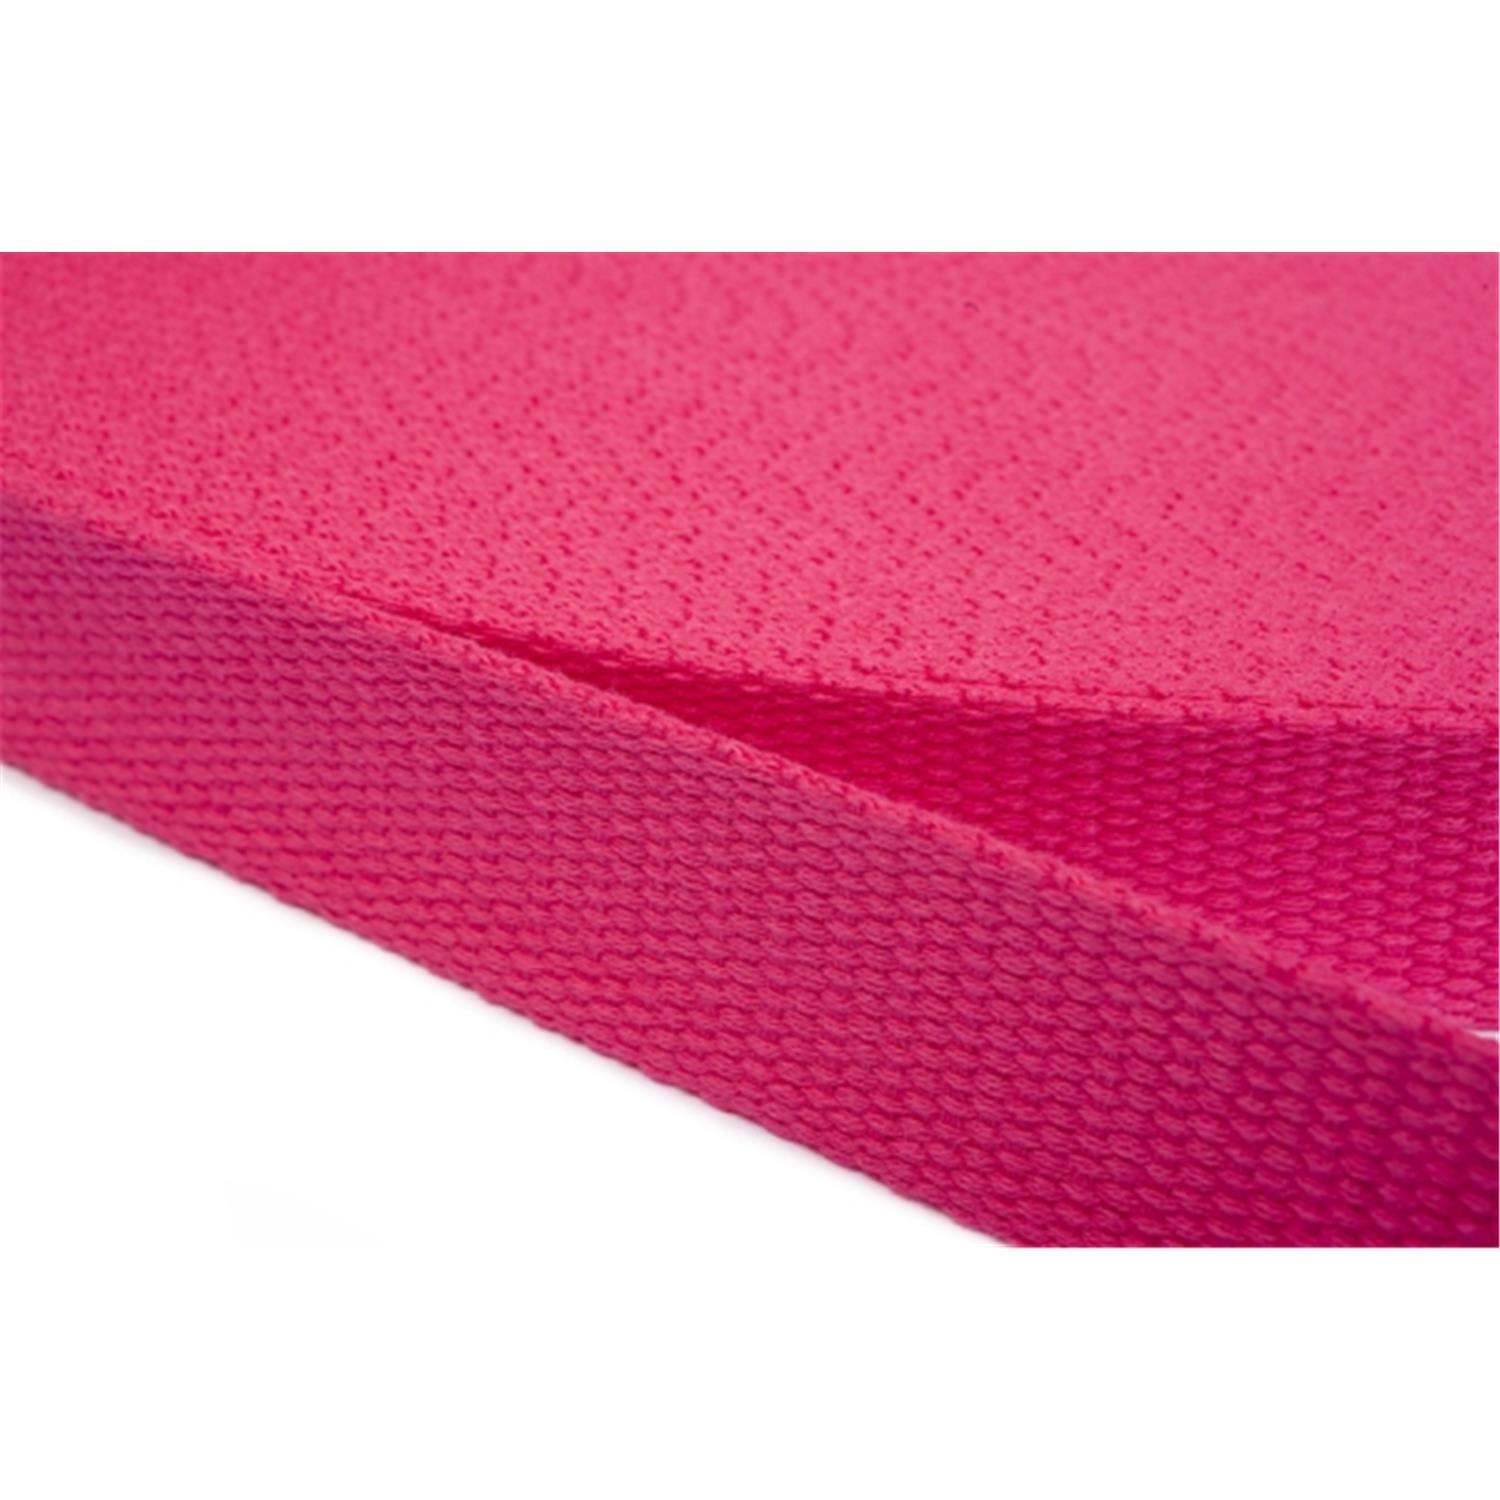 Gurtband aus Baumwolle 30mm in 20 Farben 07 - rosa/pink 12 Meter